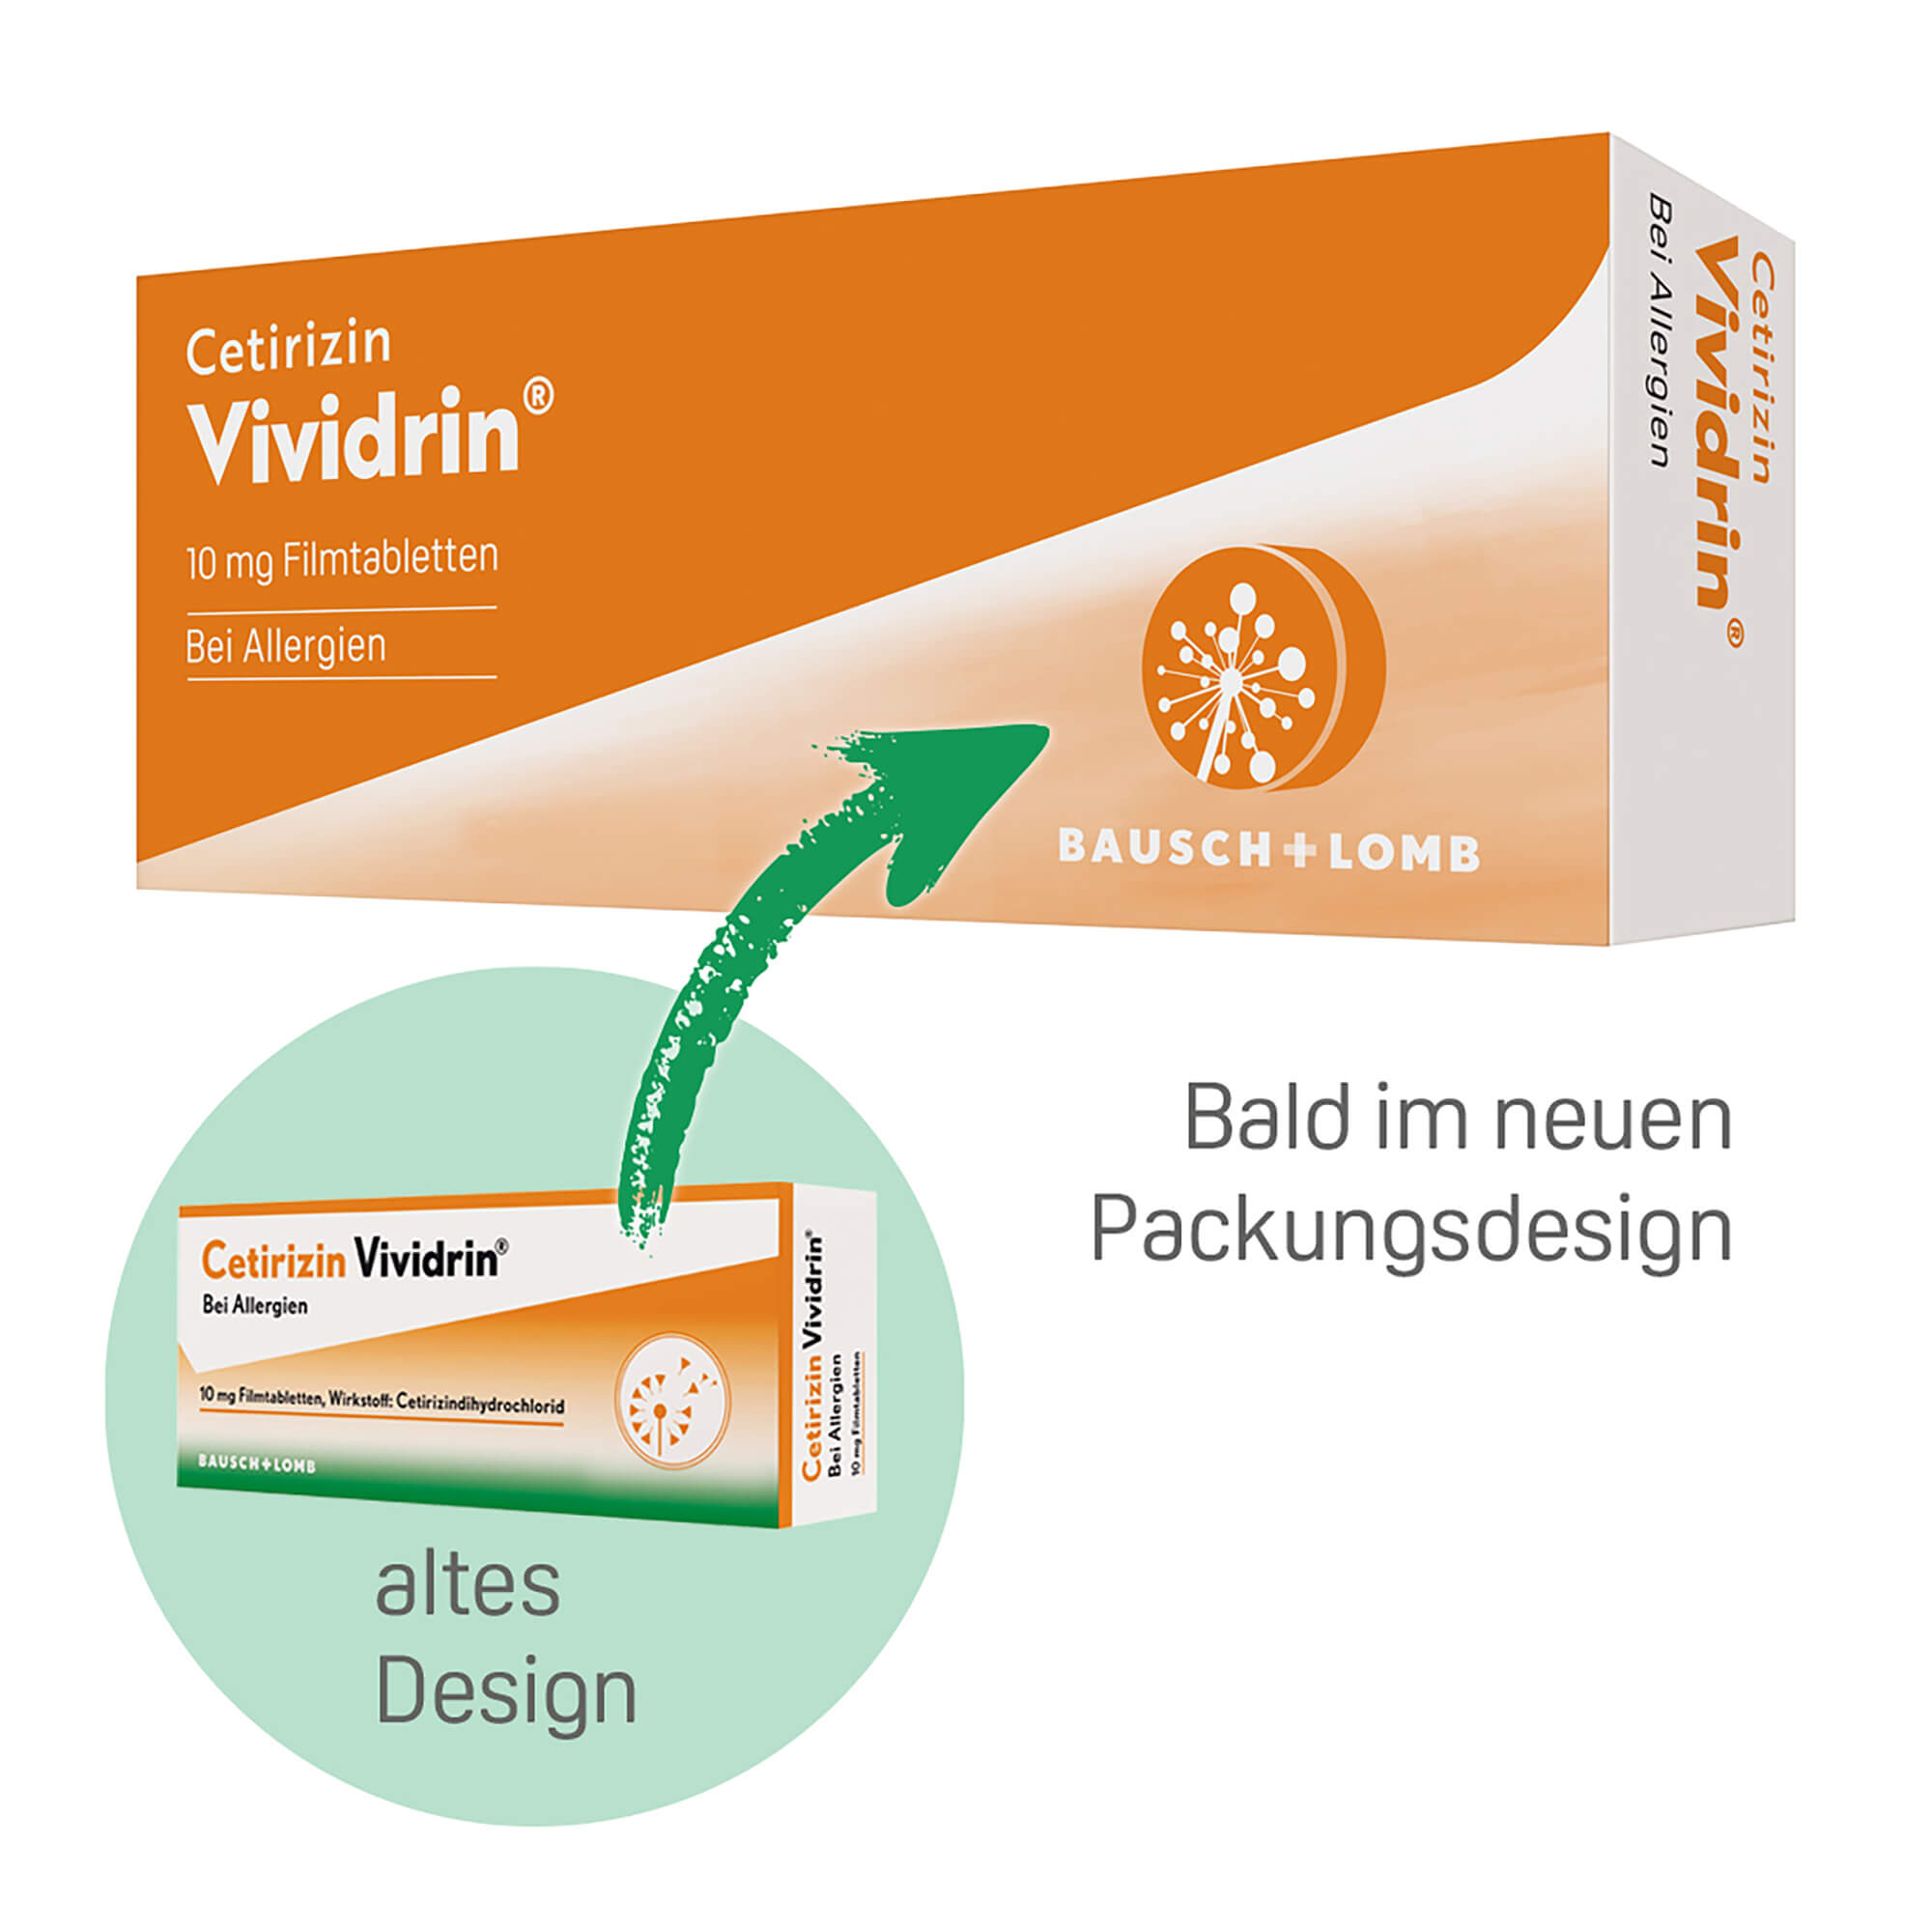 Grafik Cetirizin Vividrin 10 mg Filmtabletten Information zur Änderung des Packungsdesigns